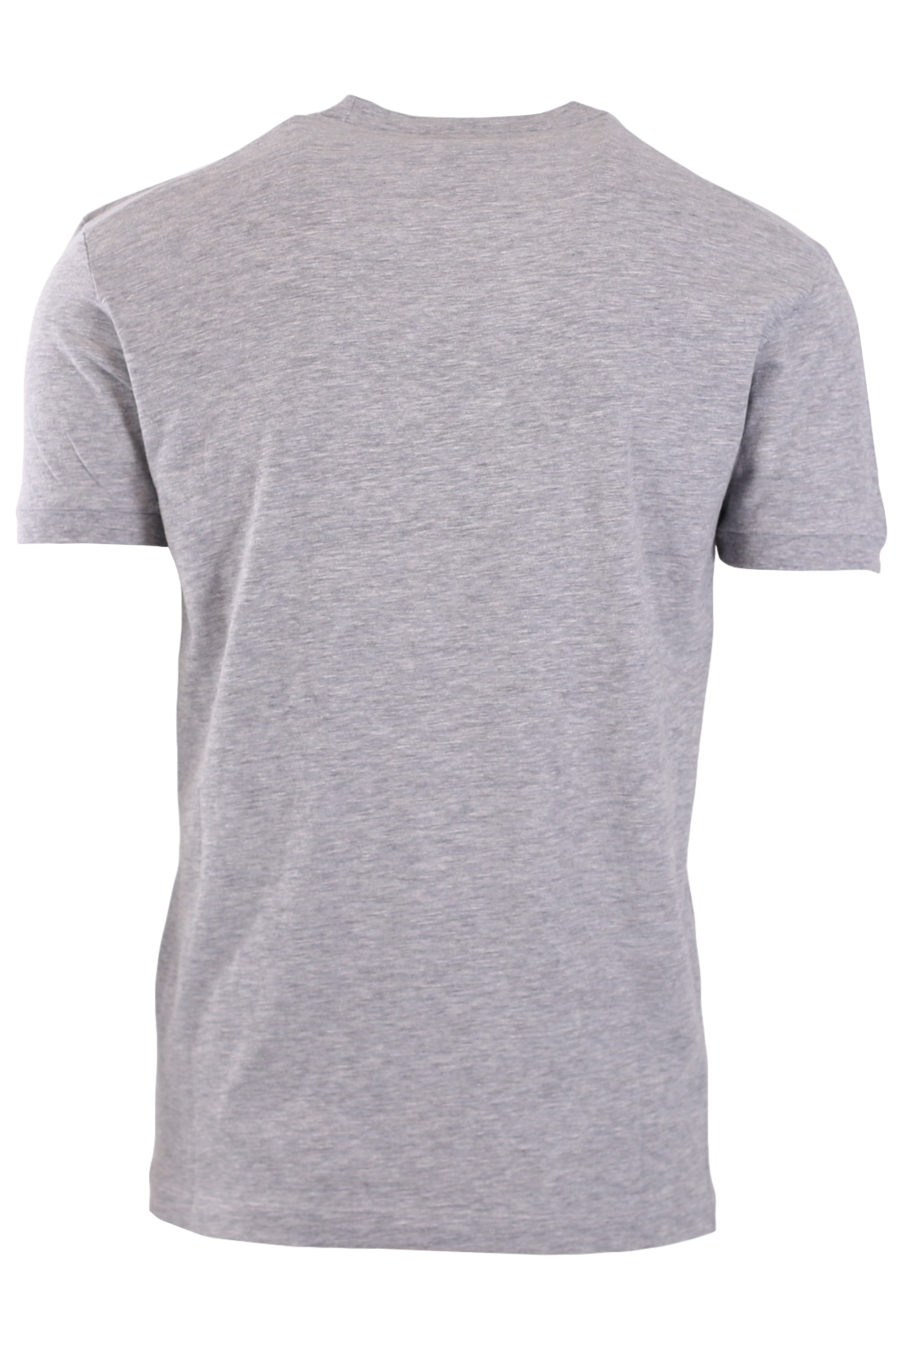 Grey t-shirt with worn pattern - 8fa87ca5ab30bf7f24fddf143bb3dbbfc8820852